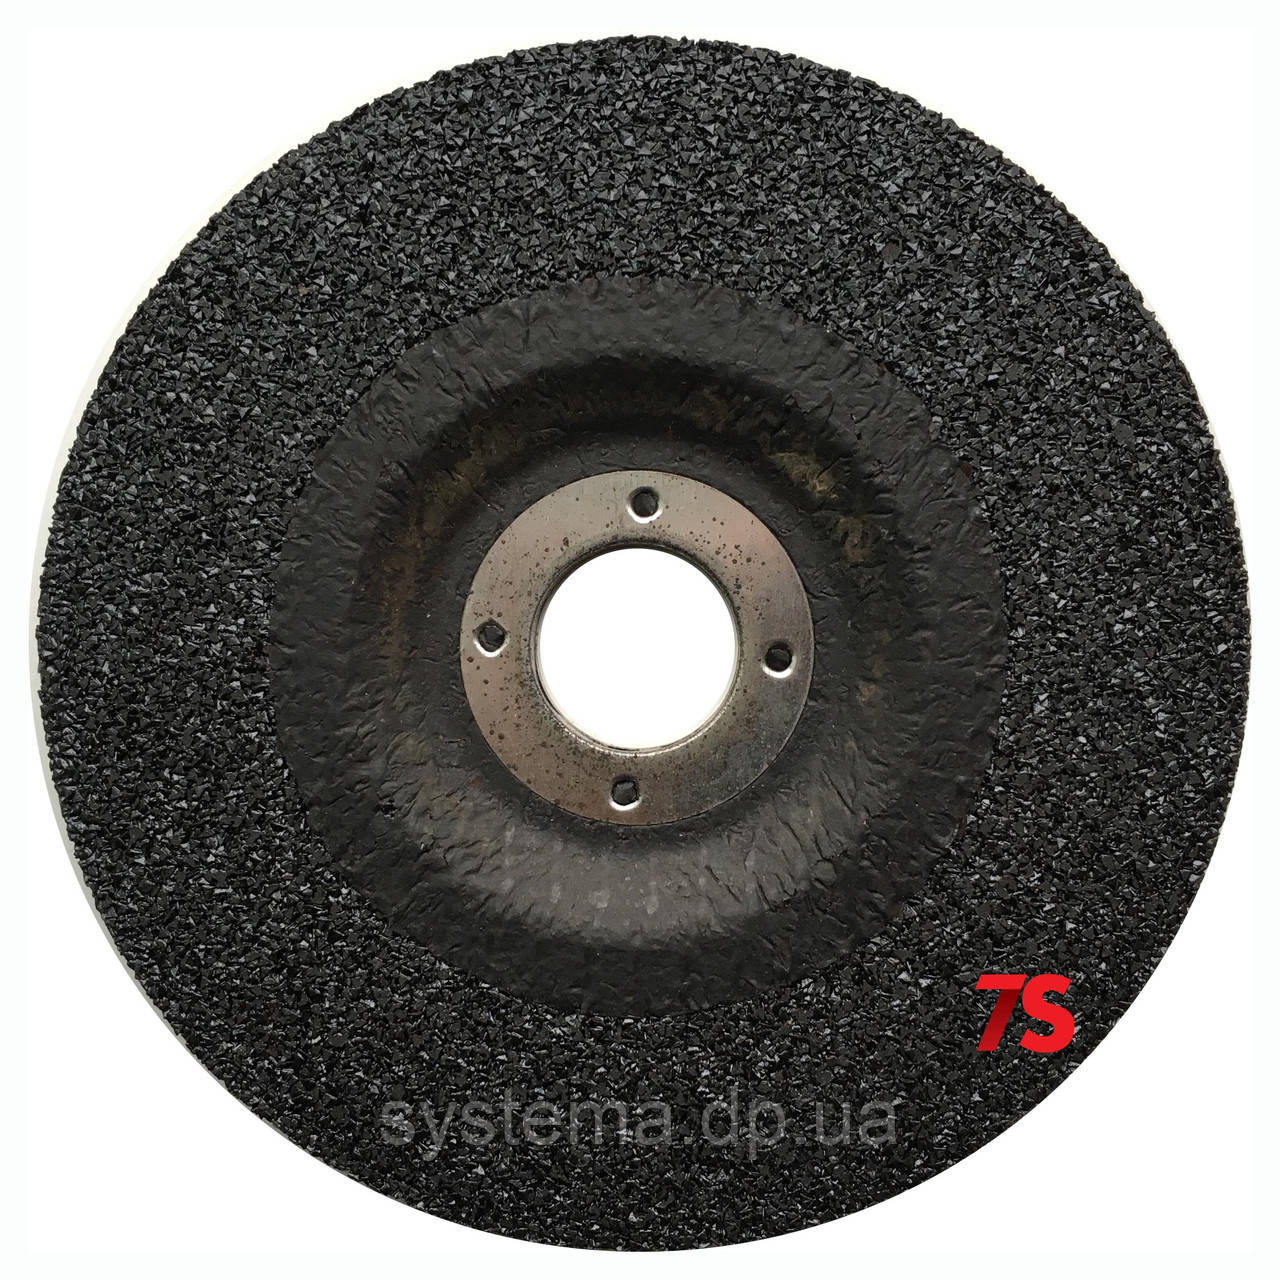 3M 51806 - Відрізний круг по металу Silver T41, 230х22,23х3,0 мм